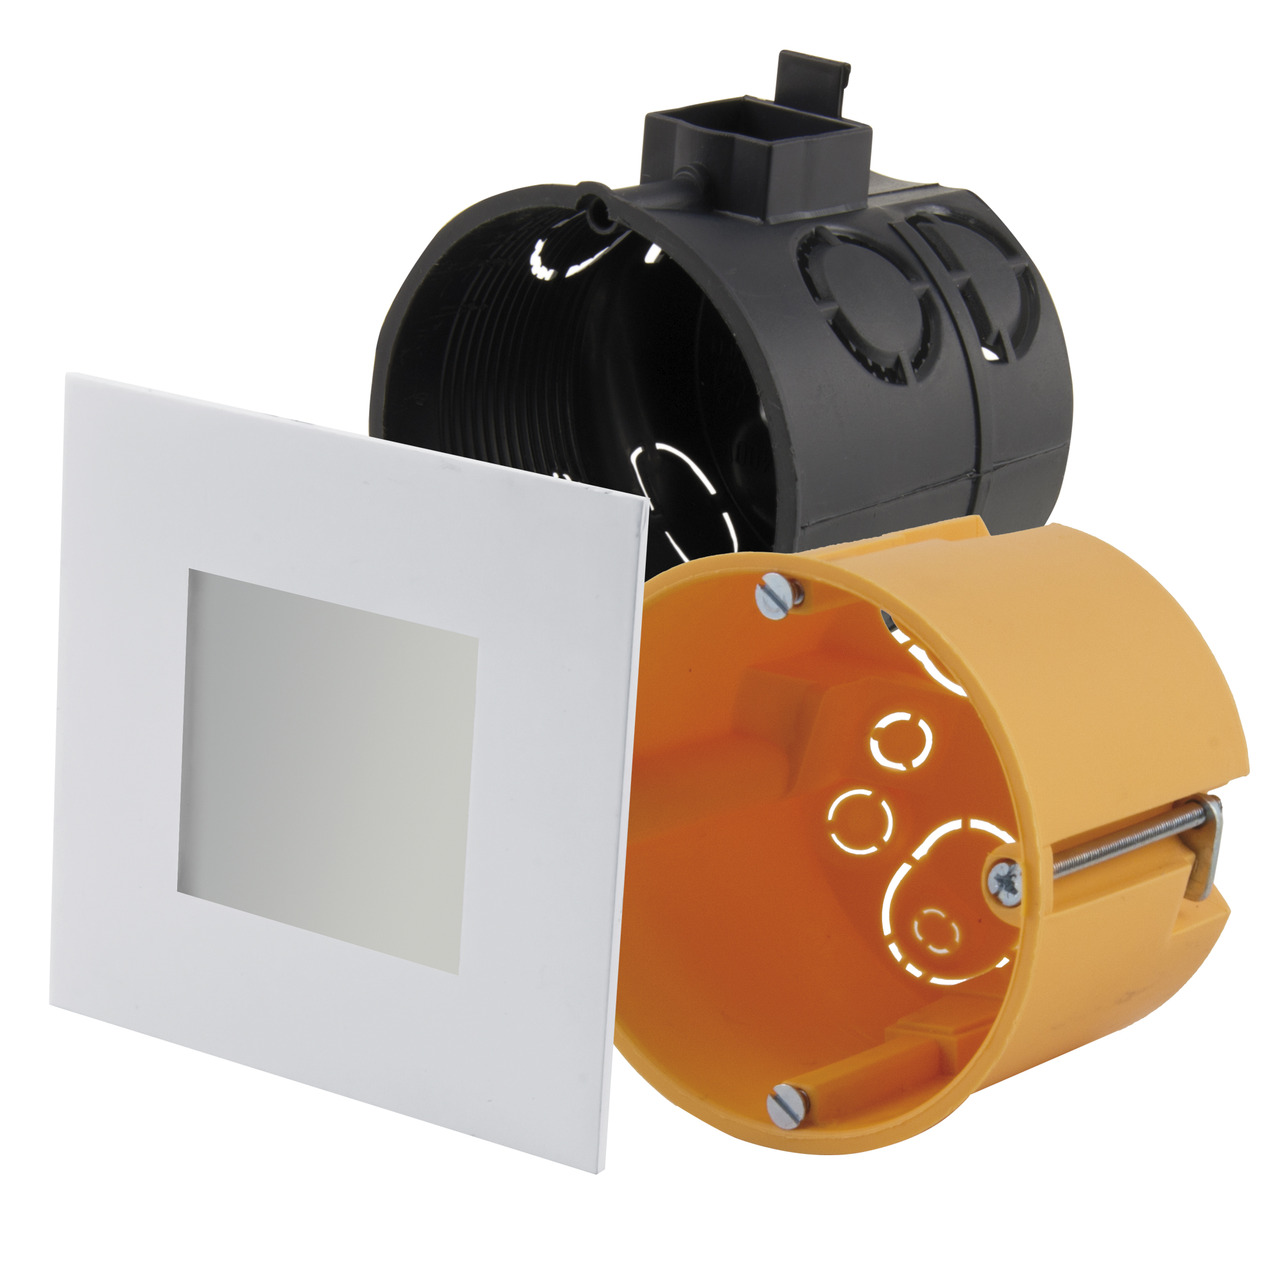 HEITRONIC 2-W-LED-Einbaupanel Nizza- passt in Schalter- und Hohlwanddosen- eckig- weiss- IP20